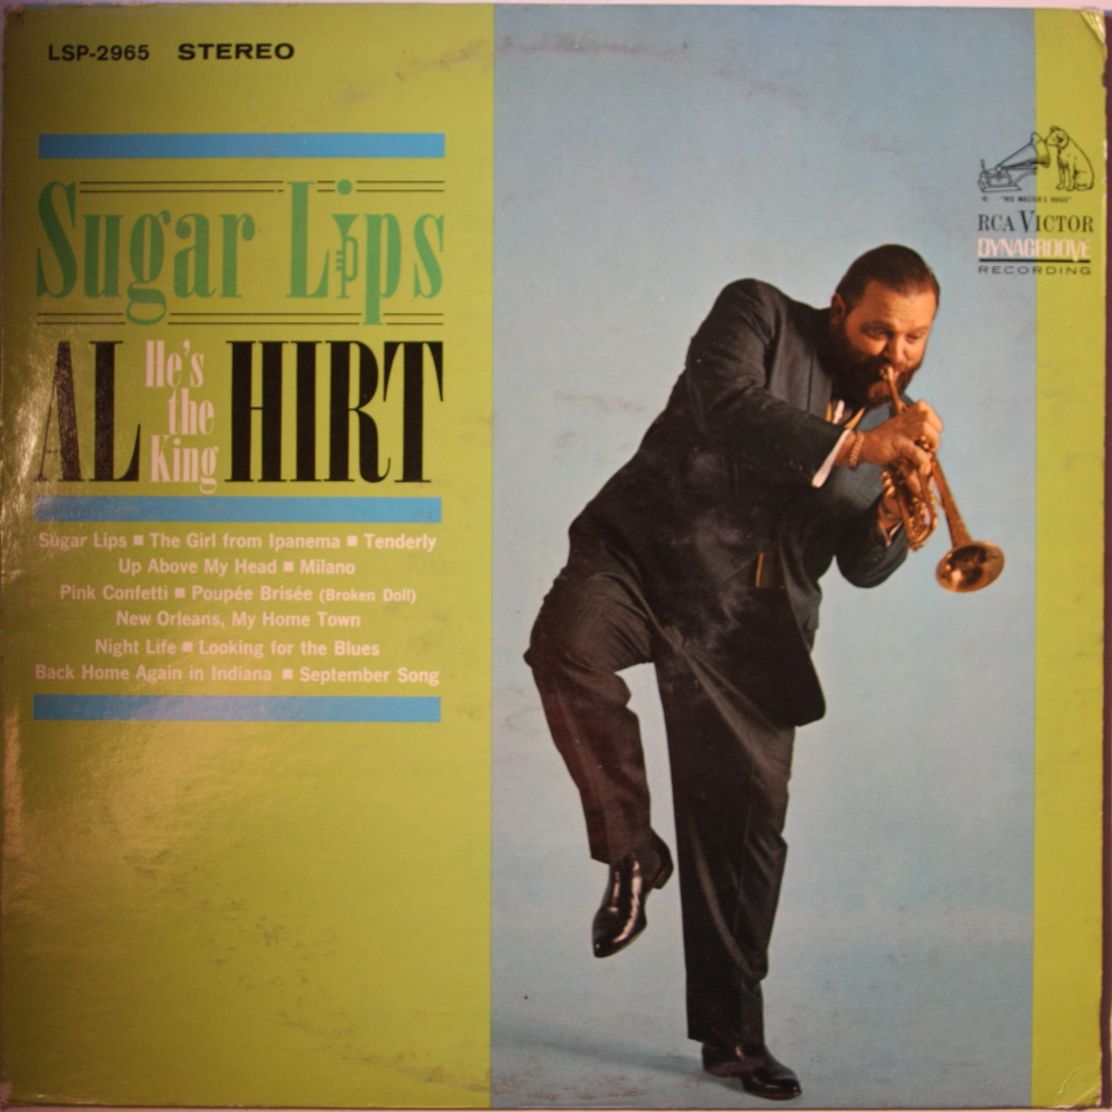 Al Hirt - Sugar Lips Al Hirt